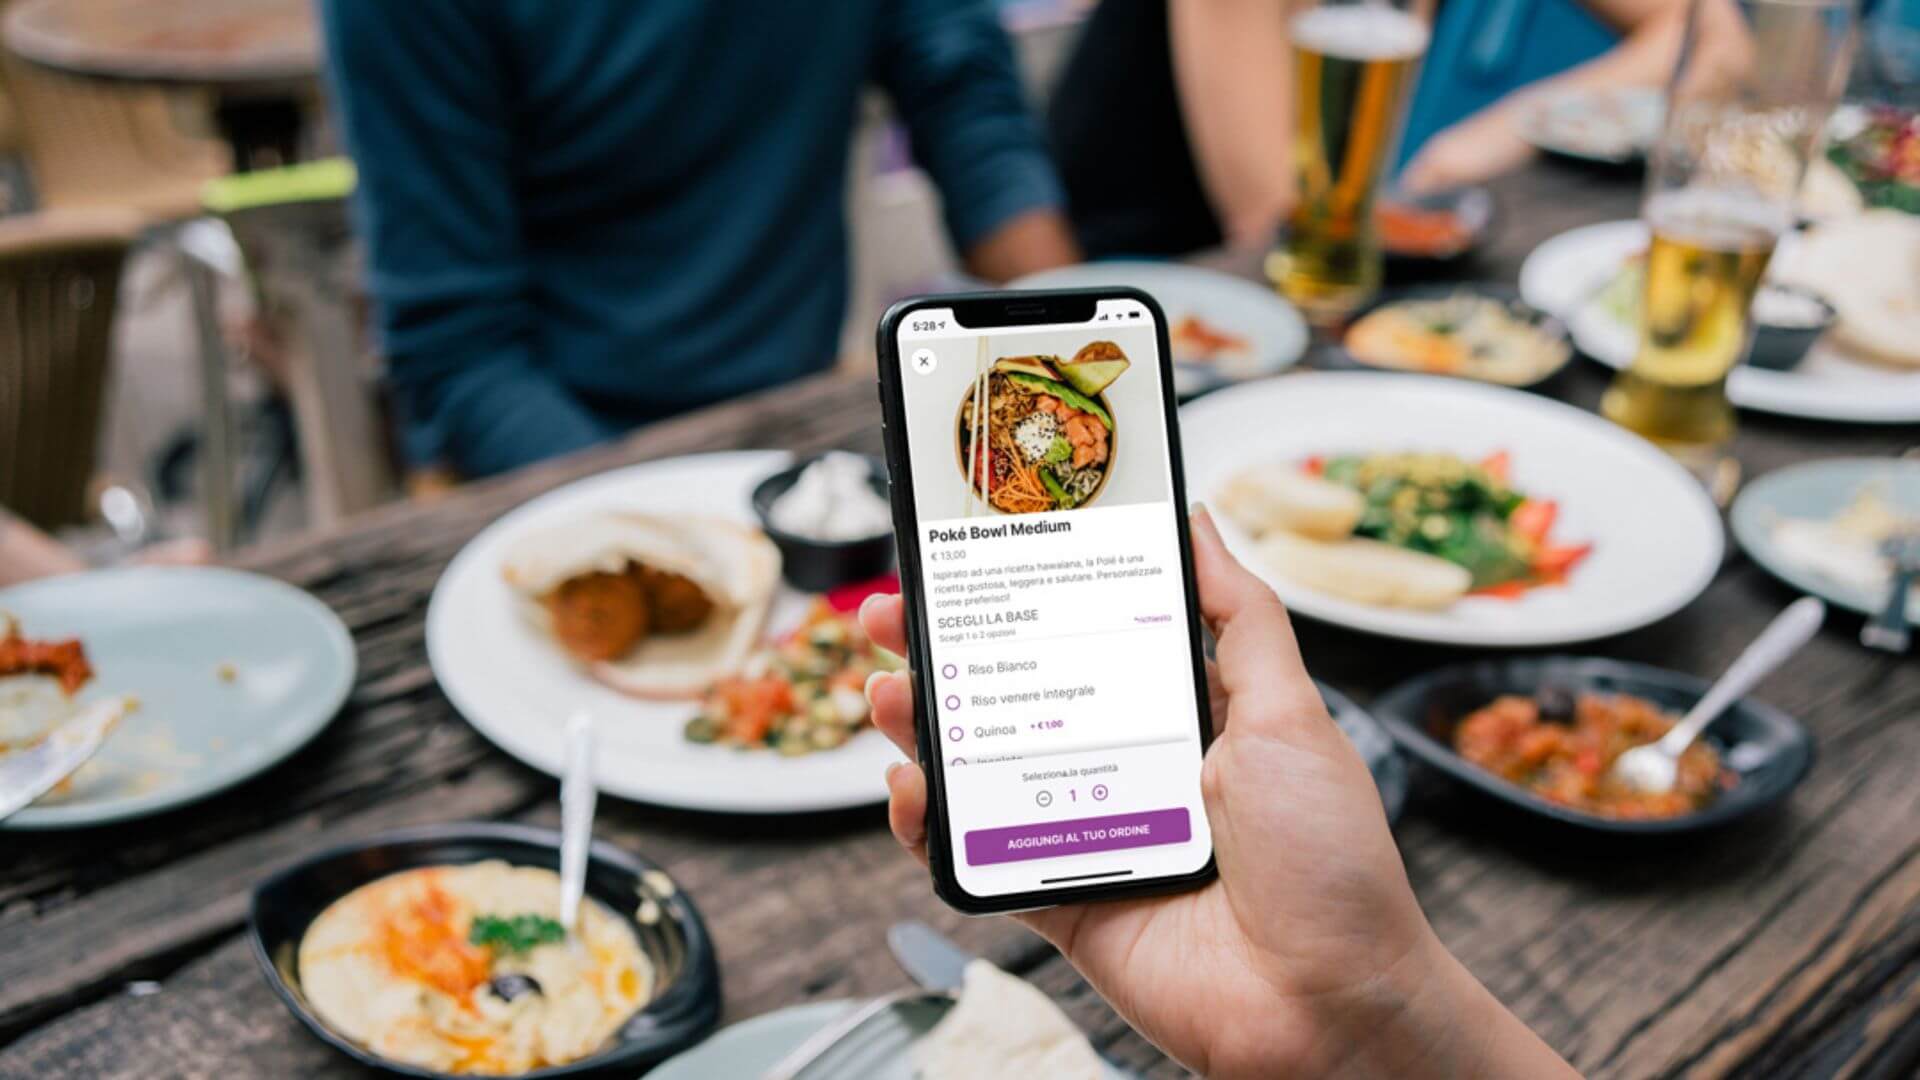 L'era del menù digitale e del self-ordering: come sta cambiando la ristorazione